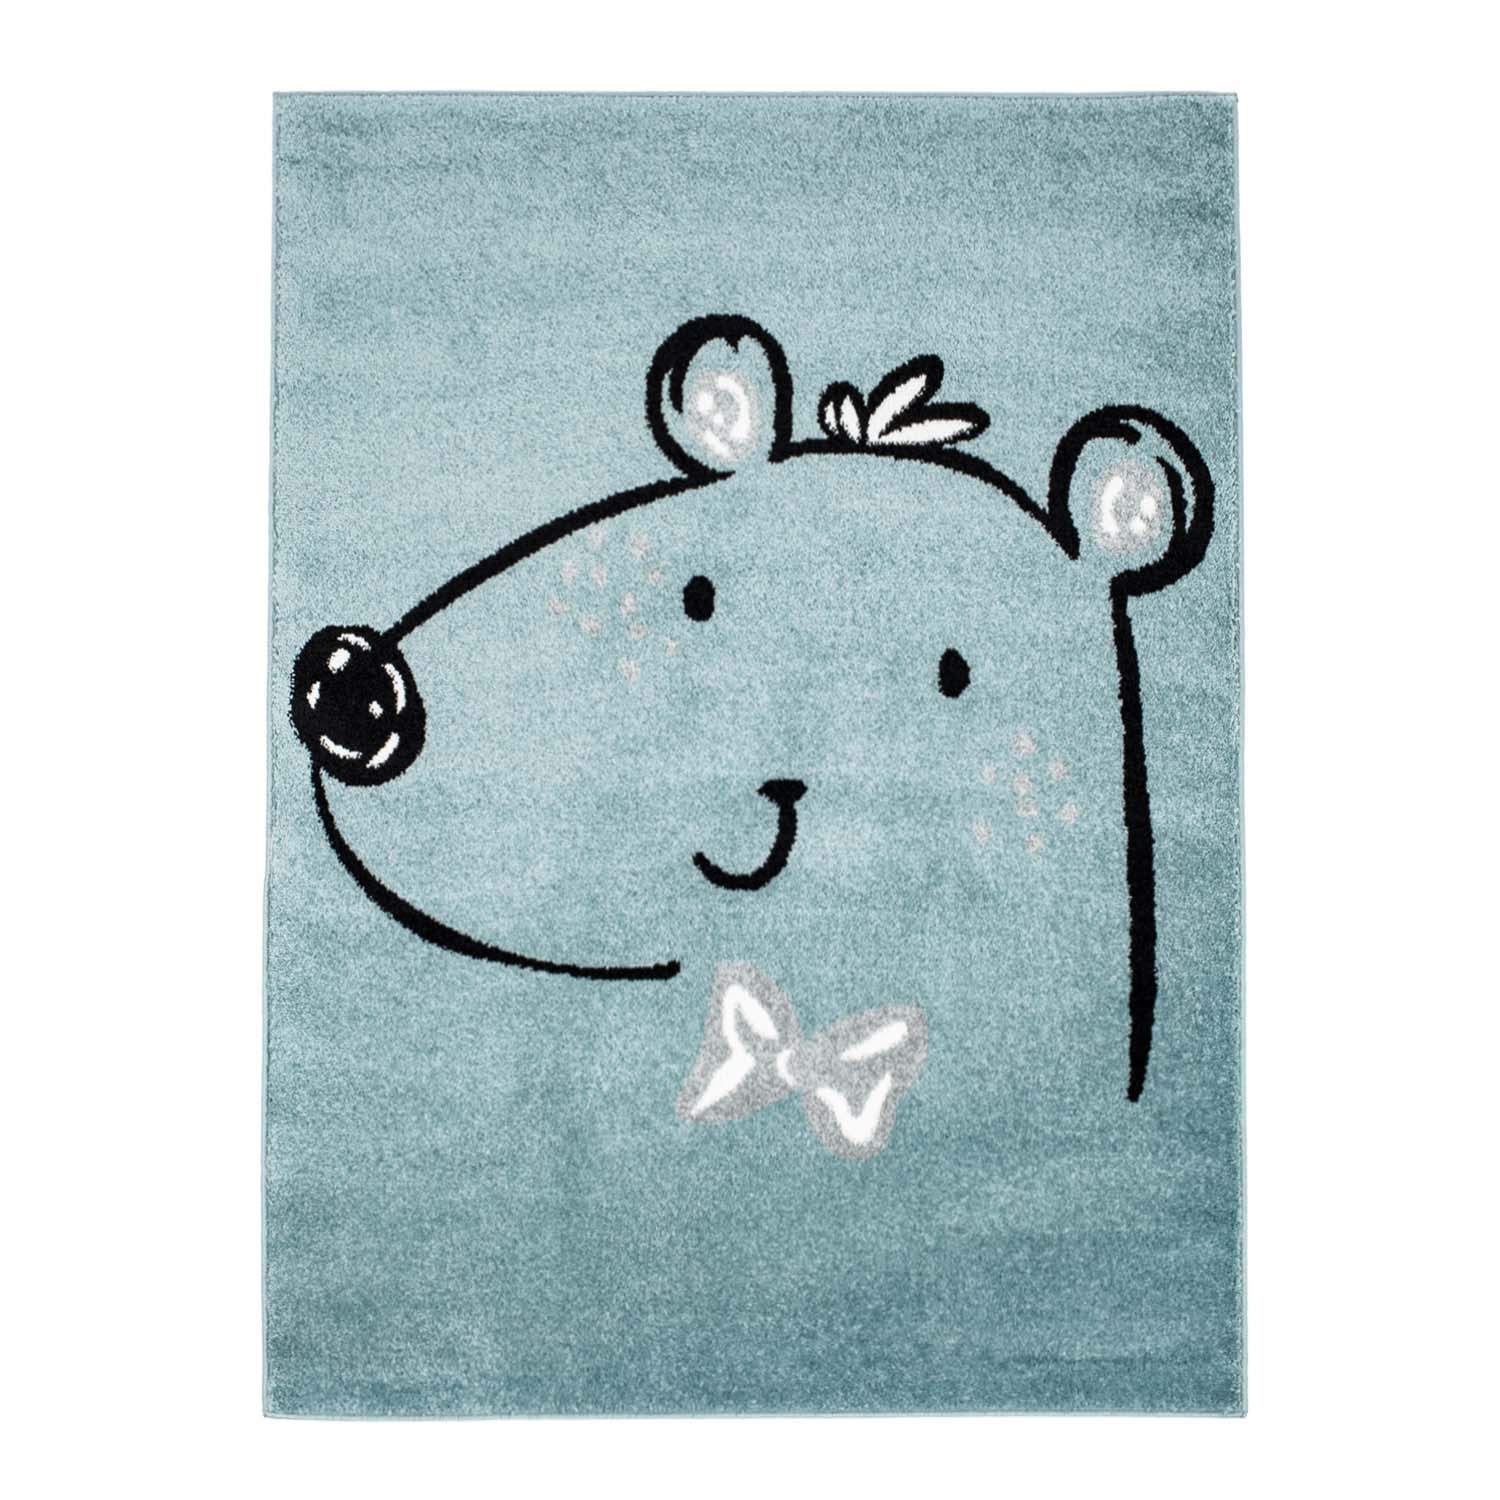 CHILDRENS RUGS rug for children room CHILDRENS RUGS for boy girl Bubble Bear blue bear